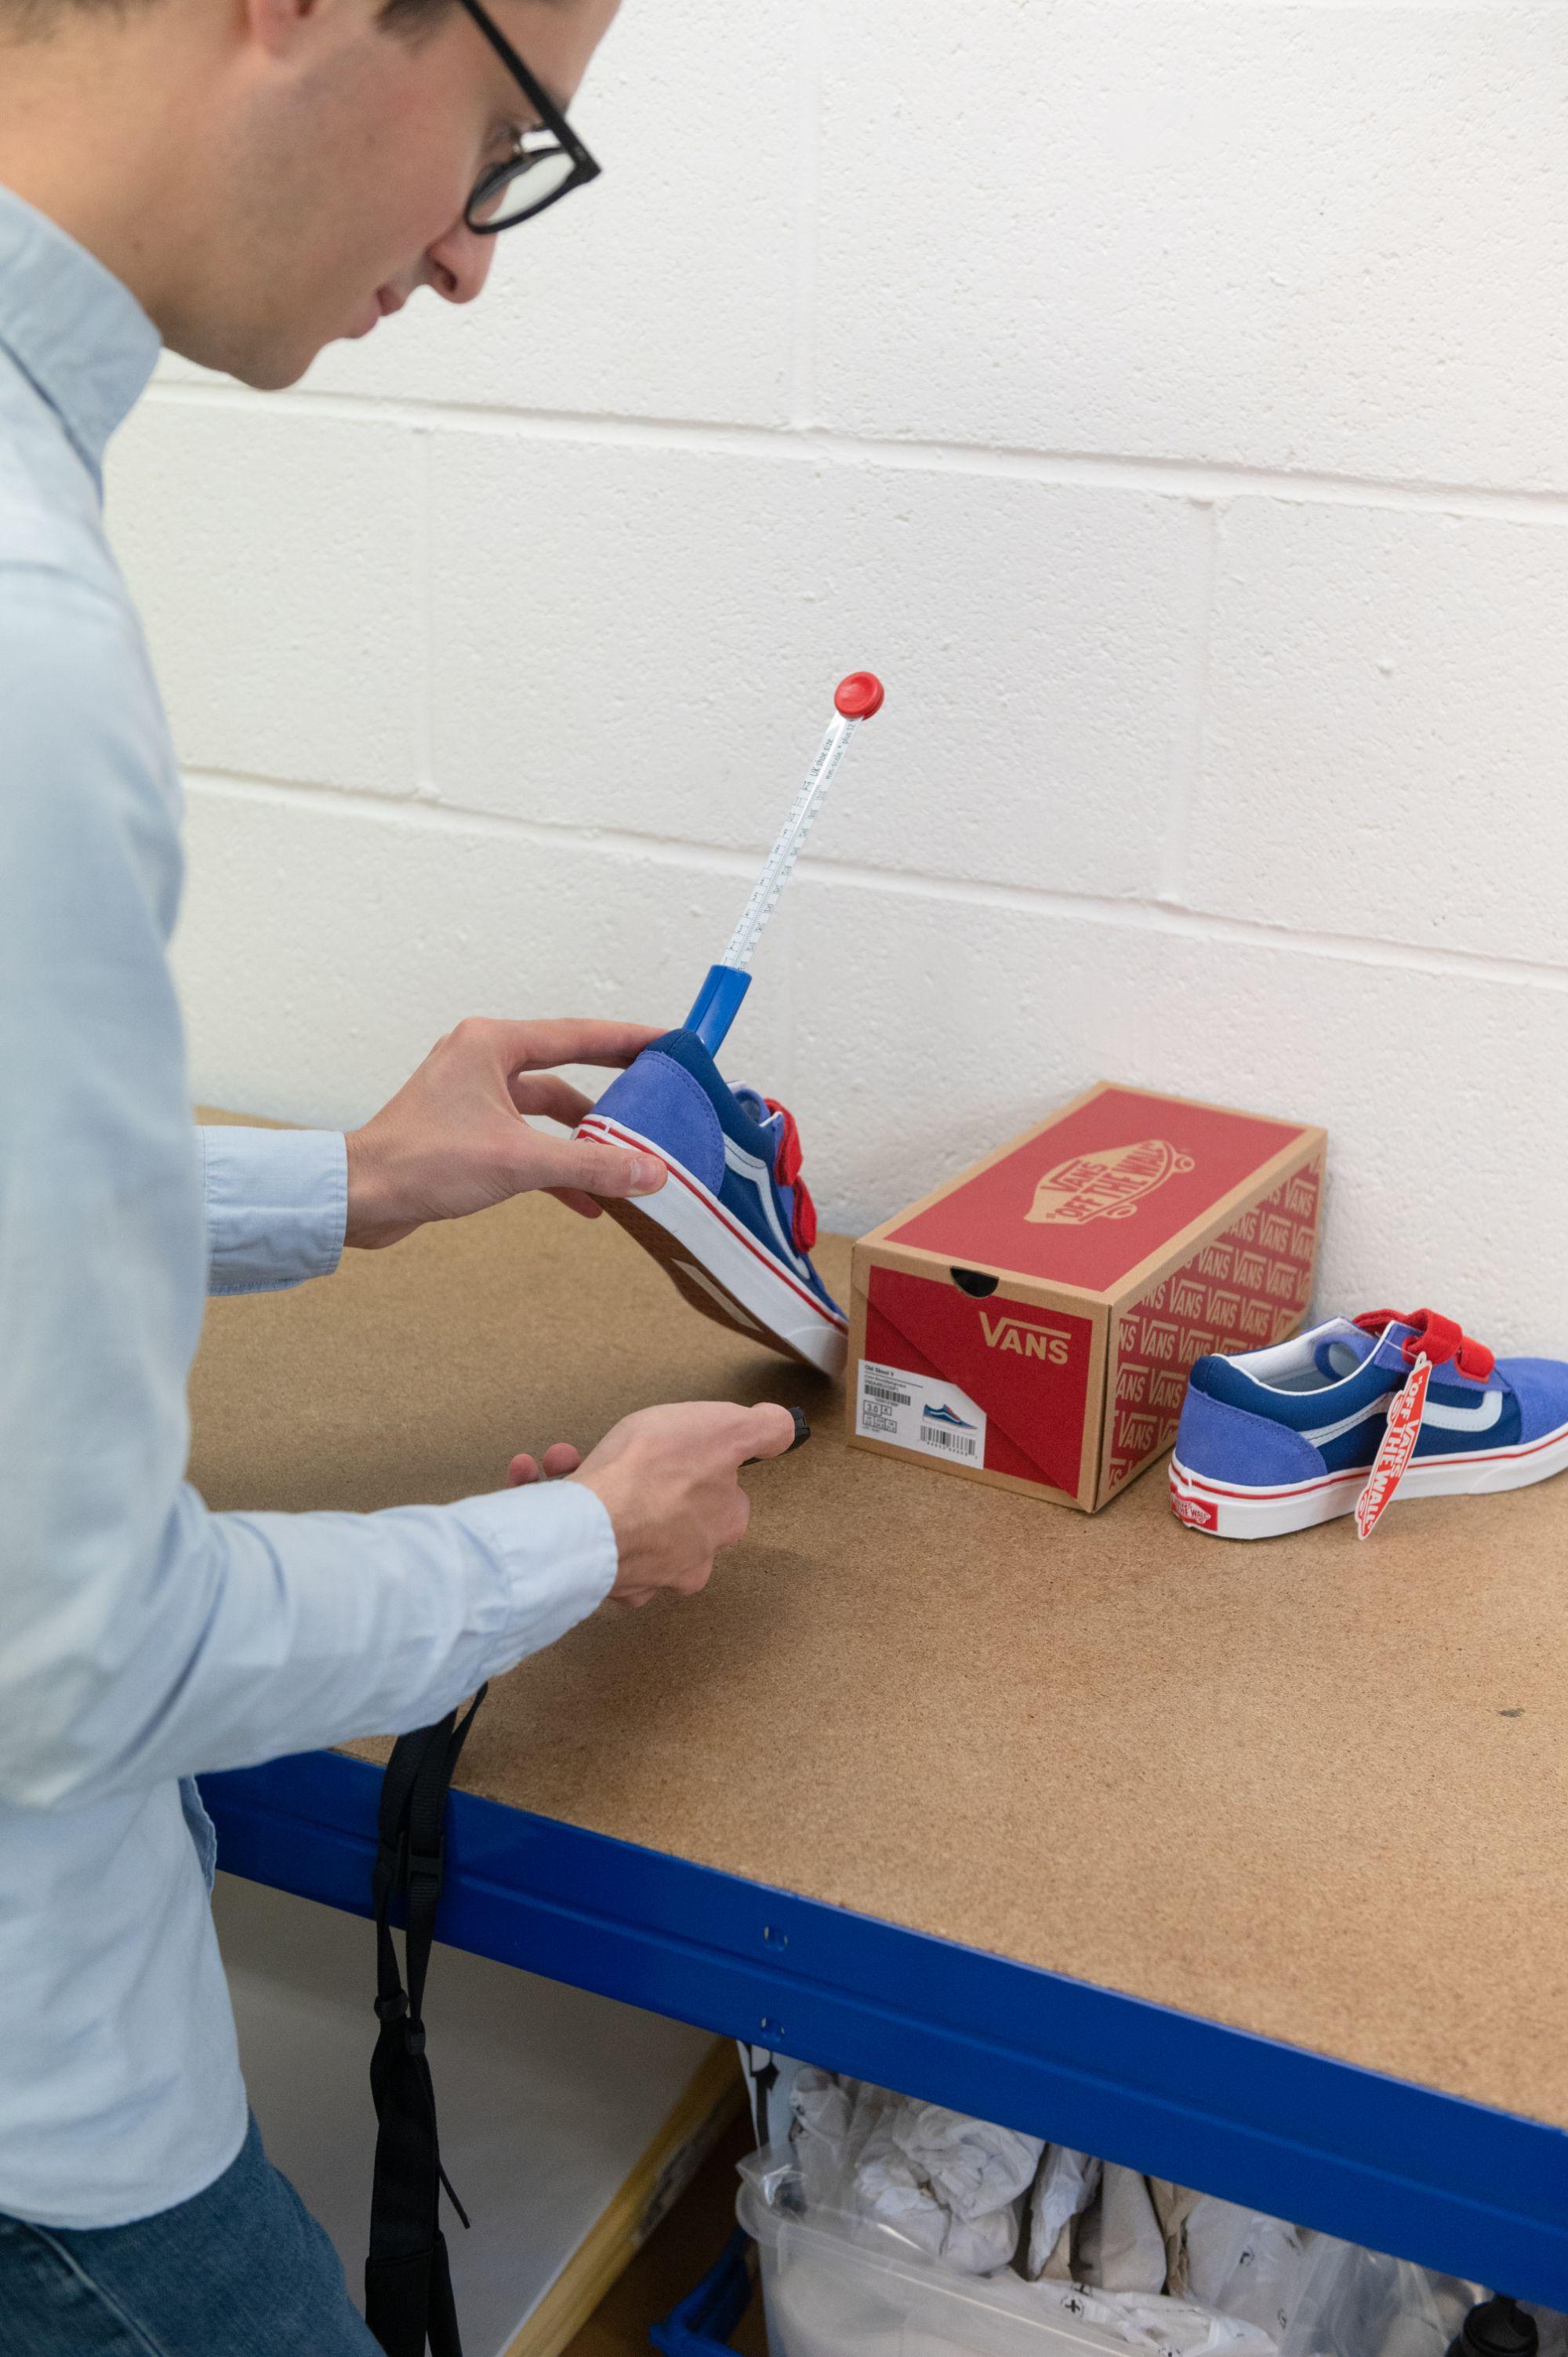 Eralp measuring a shoe